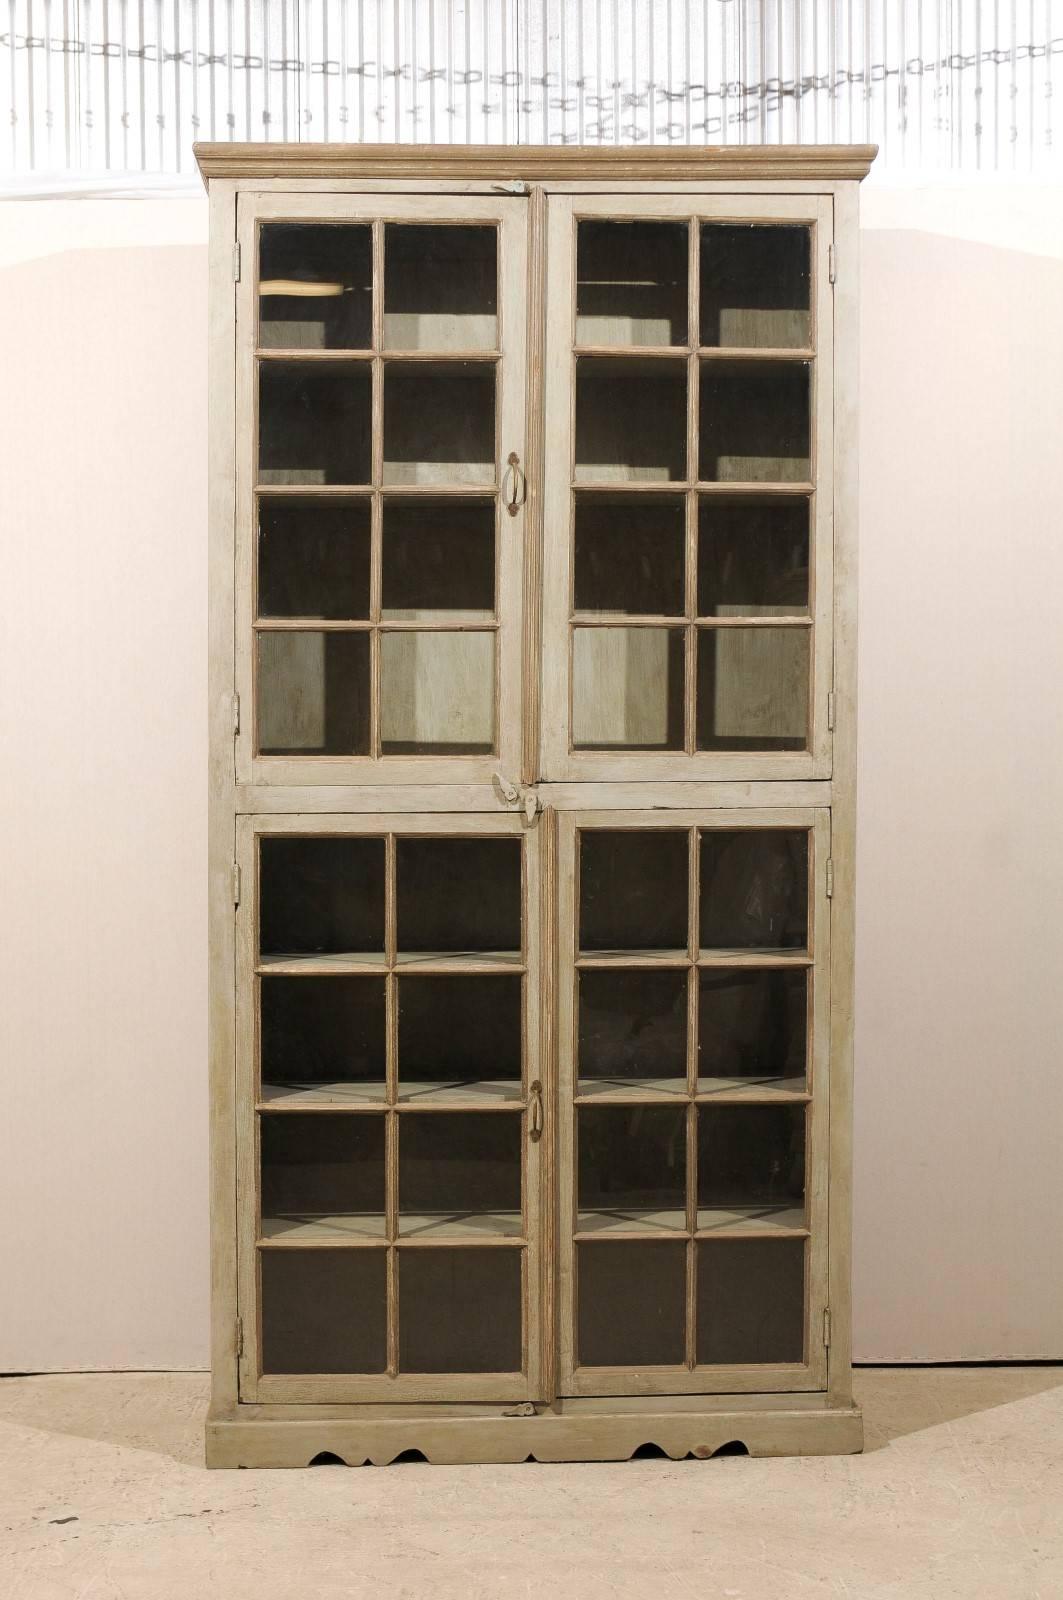 Un grand meuble à portes vitrées en bois peint. Cette armoire en bois peint d'Inde présente un profil linéaire avec quatre portes à meneaux en verre. Les portes s'ouvrent sur plusieurs étagères intérieures. Le meuble repose sur une base légèrement